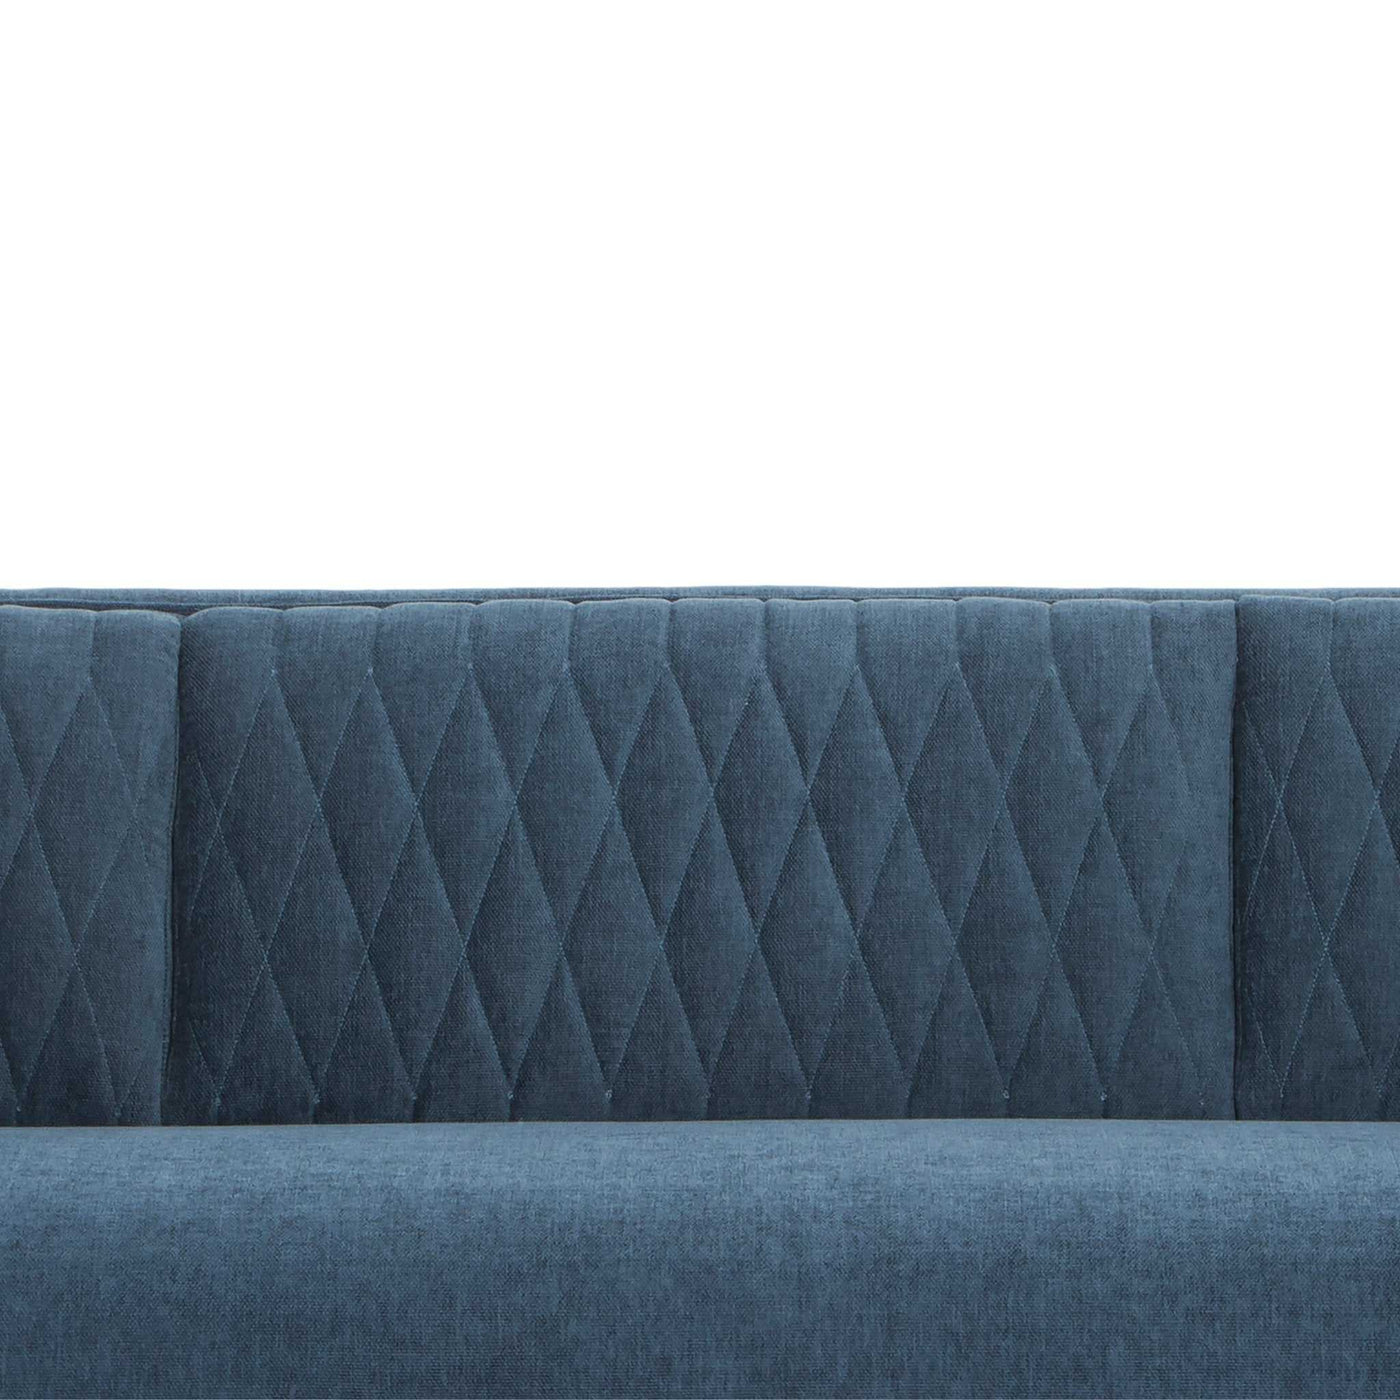 3 Seater Fabraic Sofa - Dusty Blue